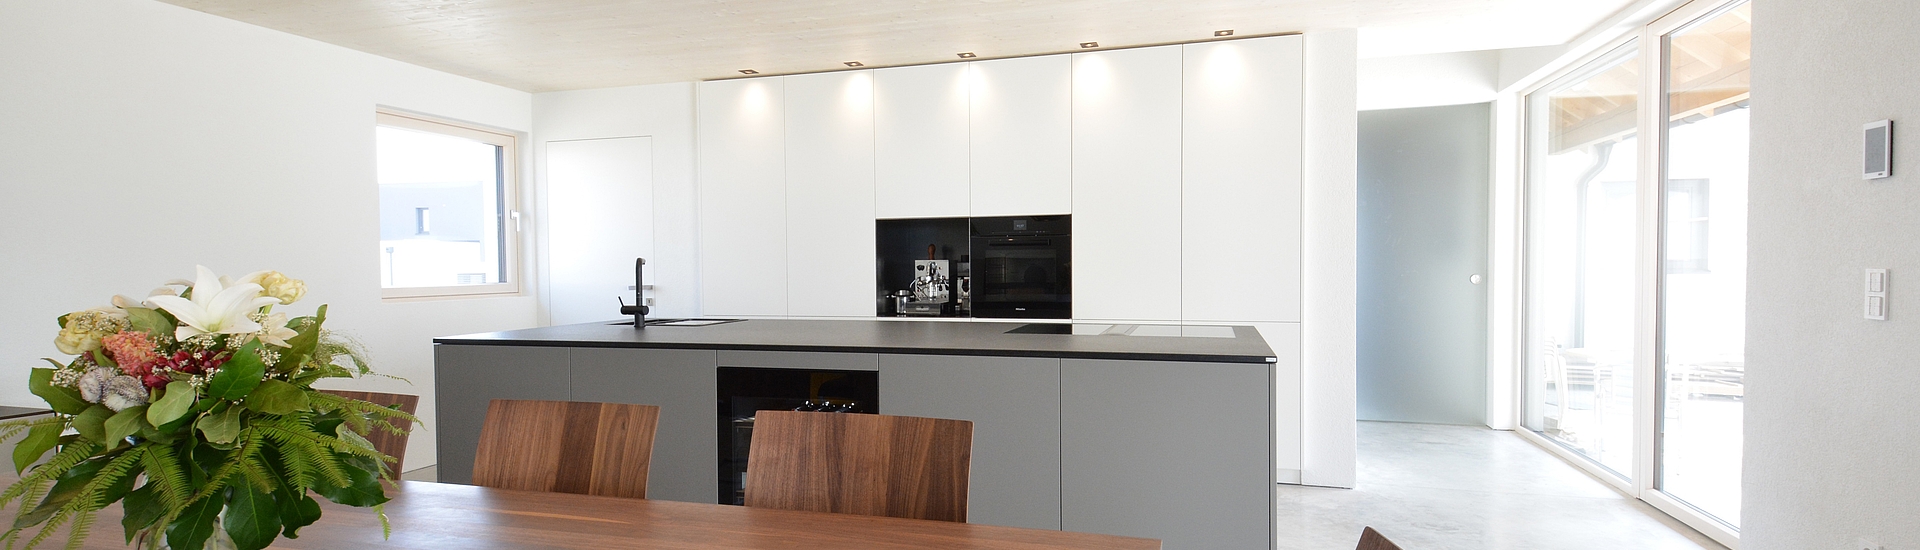 Open plan living in the kitchen – BORA kitchen design